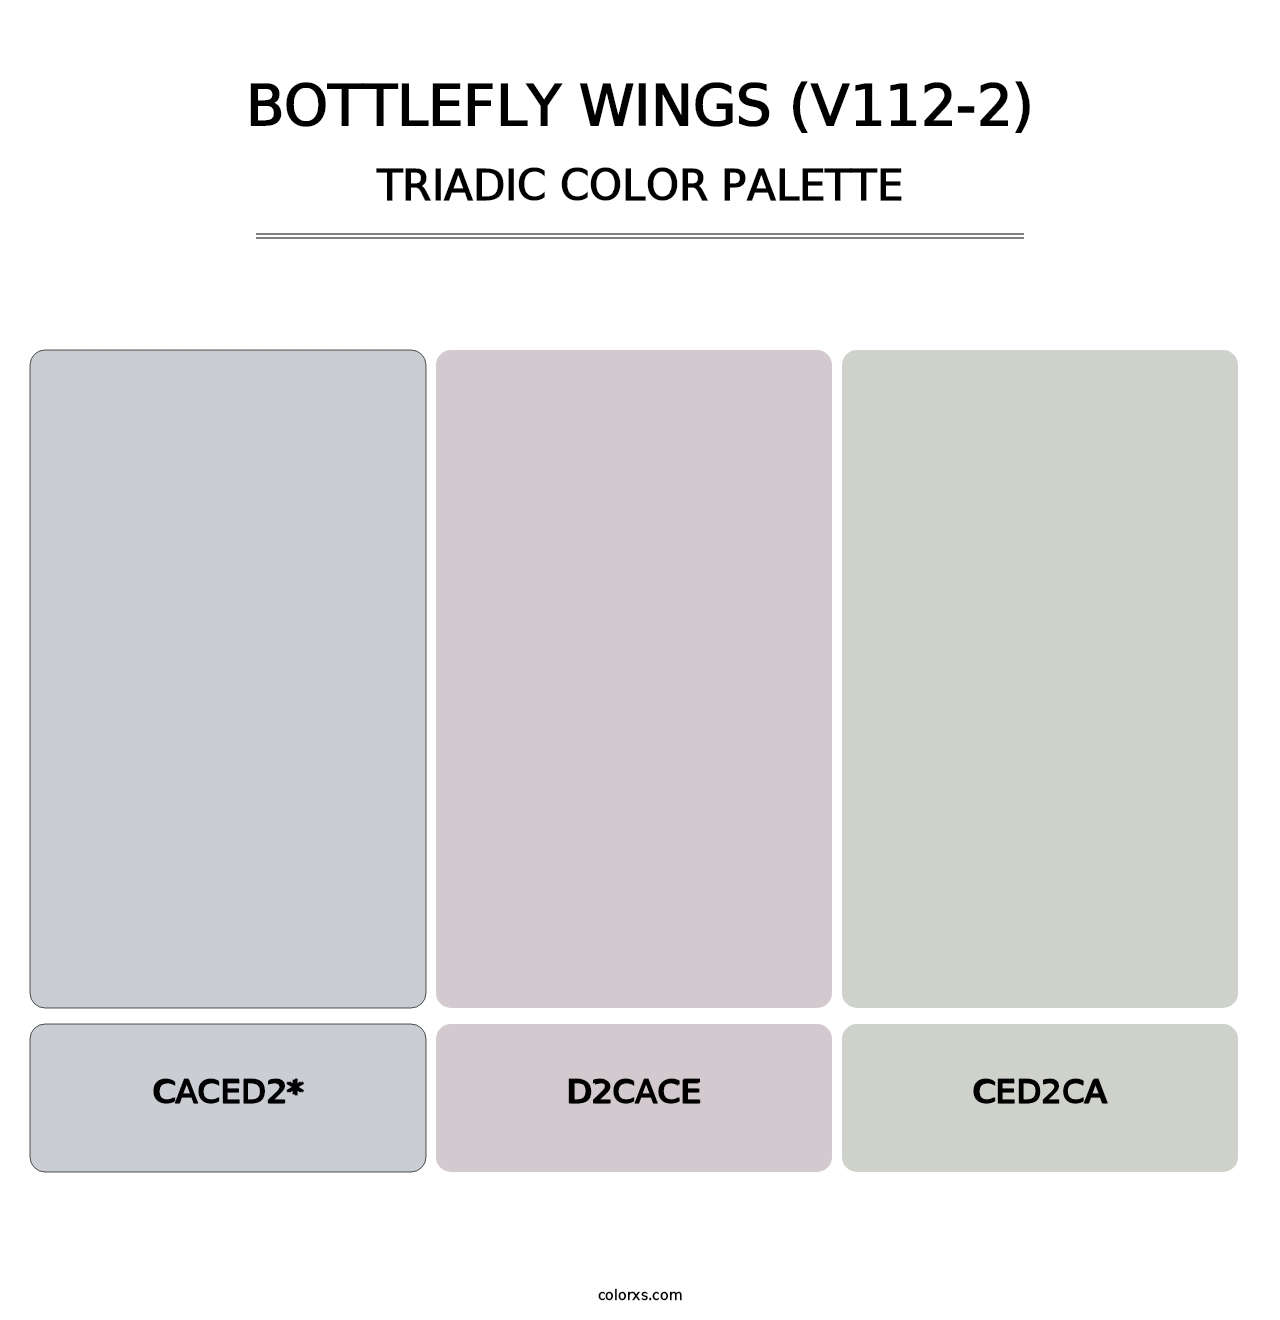 Bottlefly Wings (V112-2) - Triadic Color Palette